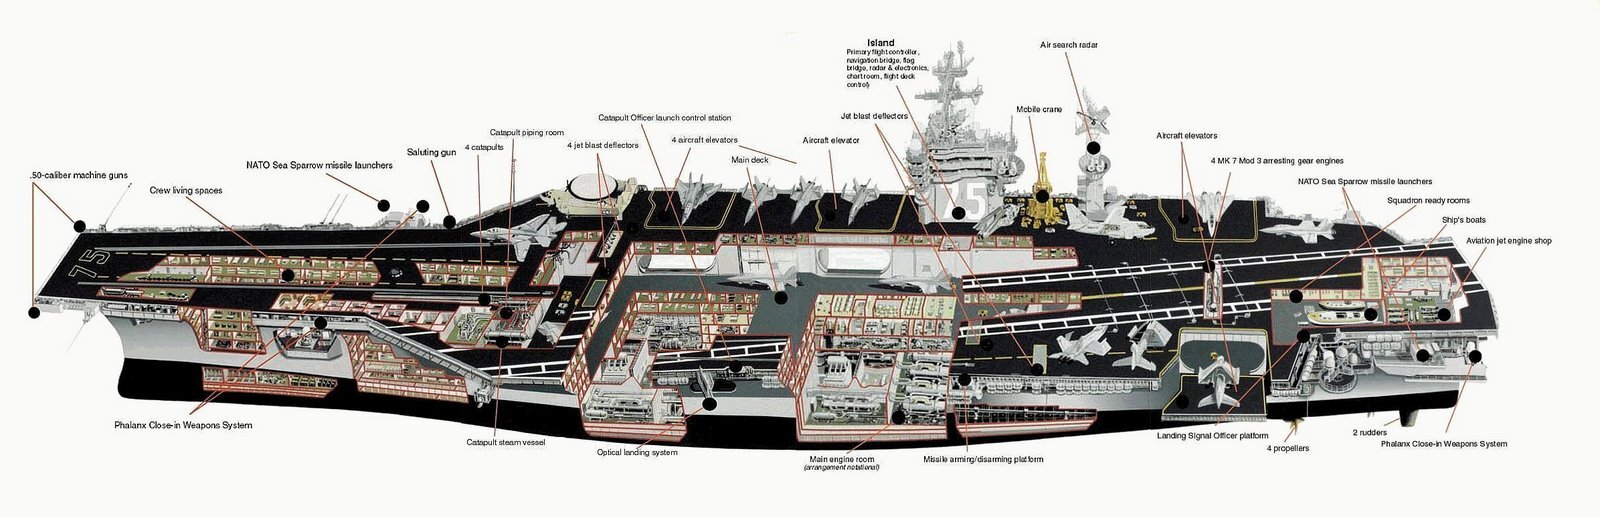 [Recherche] Plan détaillé du pont du CVN Nimitz H46r